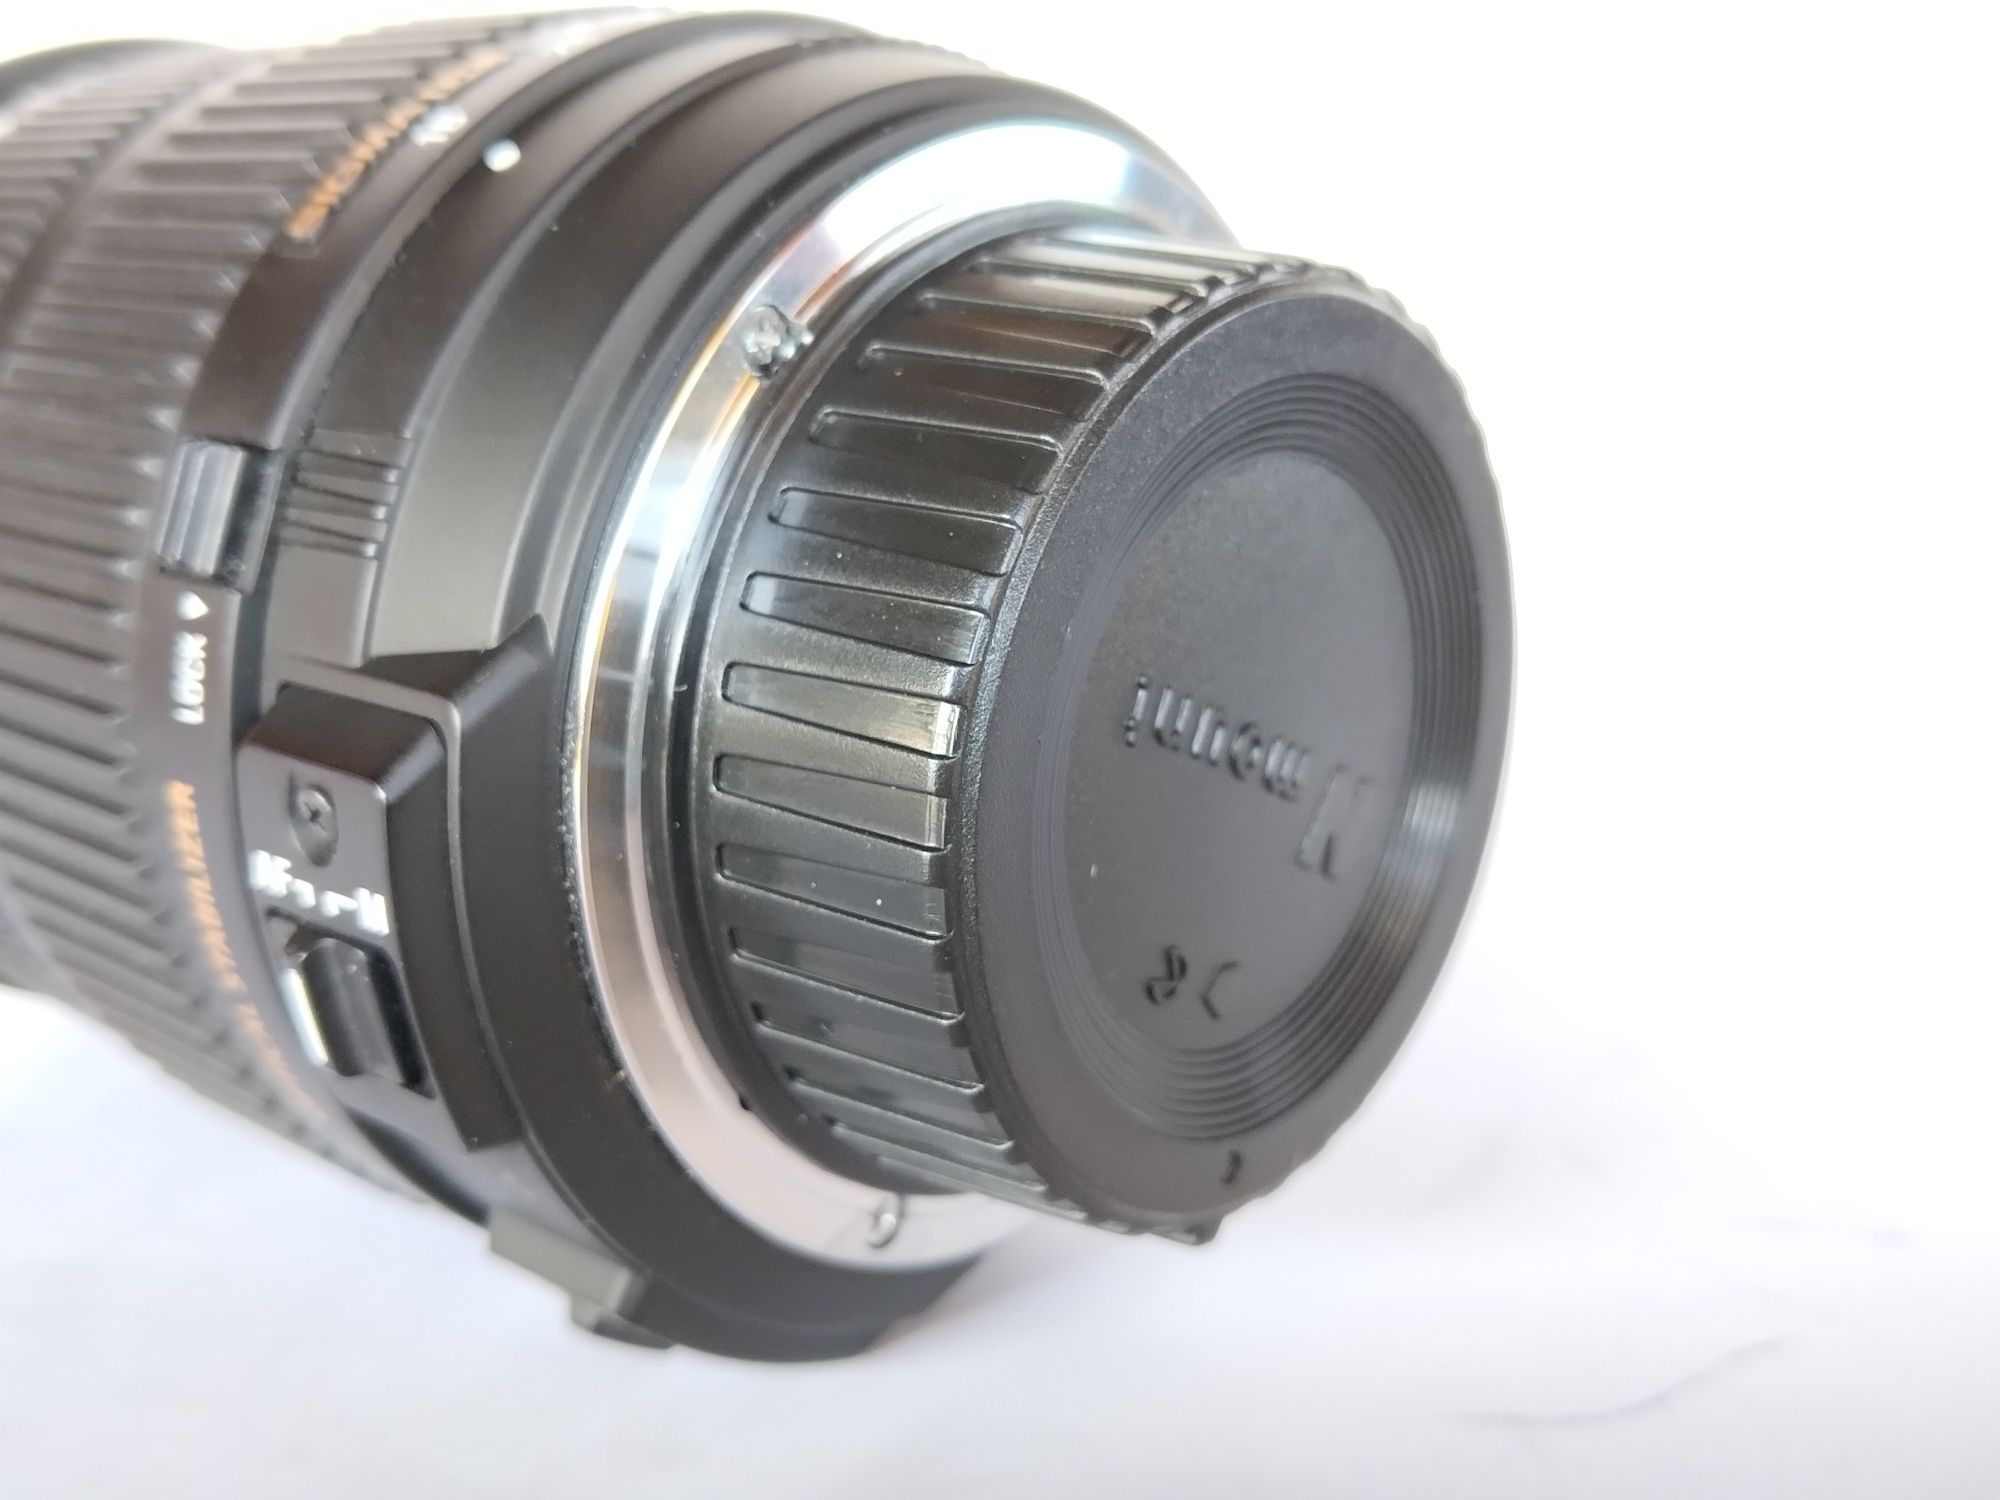 Objectiva Sigma DC 18-200mm OS. compatível com Nikon D3000 e D5000